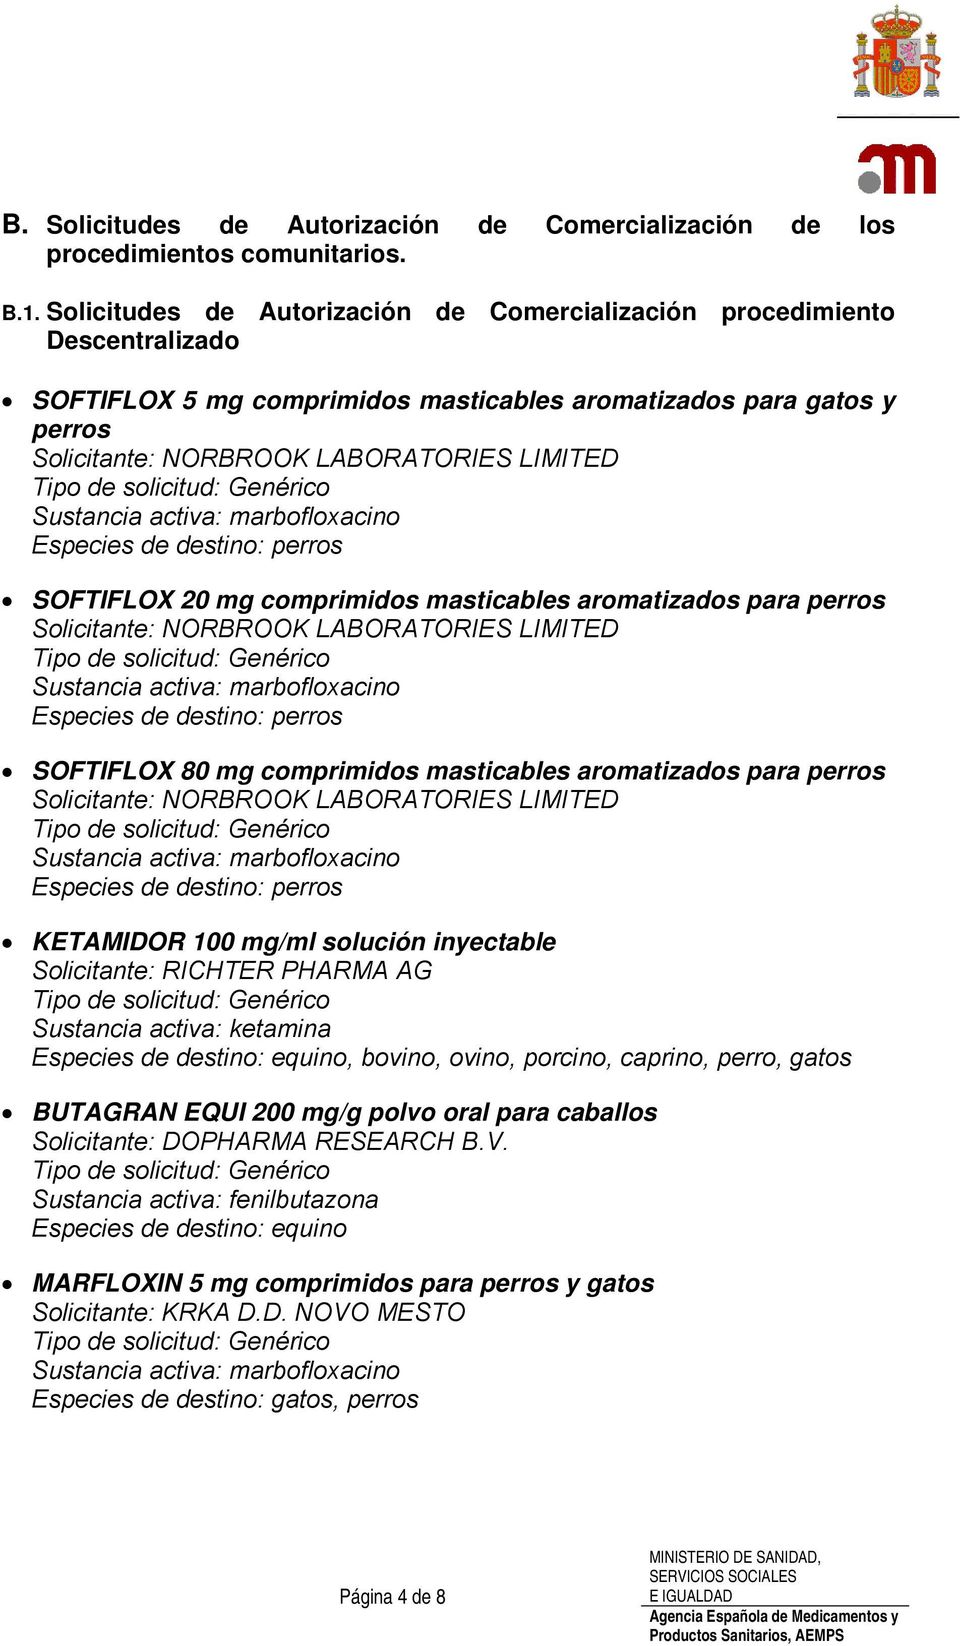 SOFTIFLOX 20 mg comprimidos masticables aromatizados para perros Solicitante: NORBROOK LABORATORIES LIMITED SOFTIFLOX 80 mg comprimidos masticables aromatizados para perros Solicitante: NORBROOK